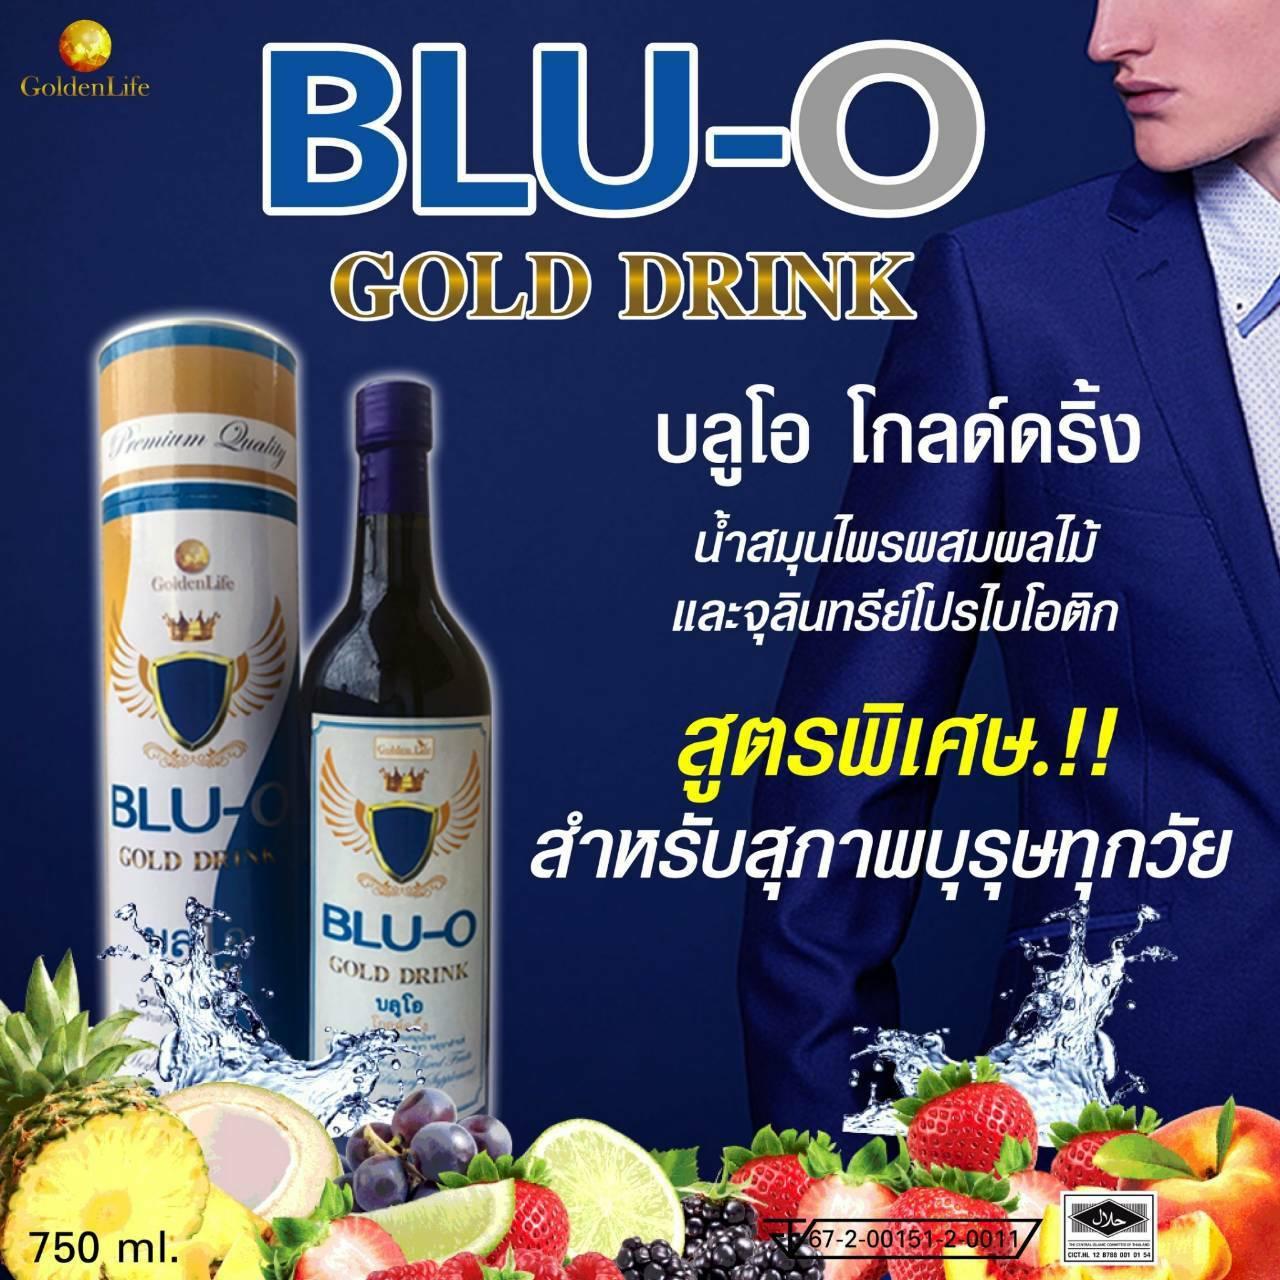 บลูโอ โกลด์ดริ้ง (Blu-O Gold Drink)